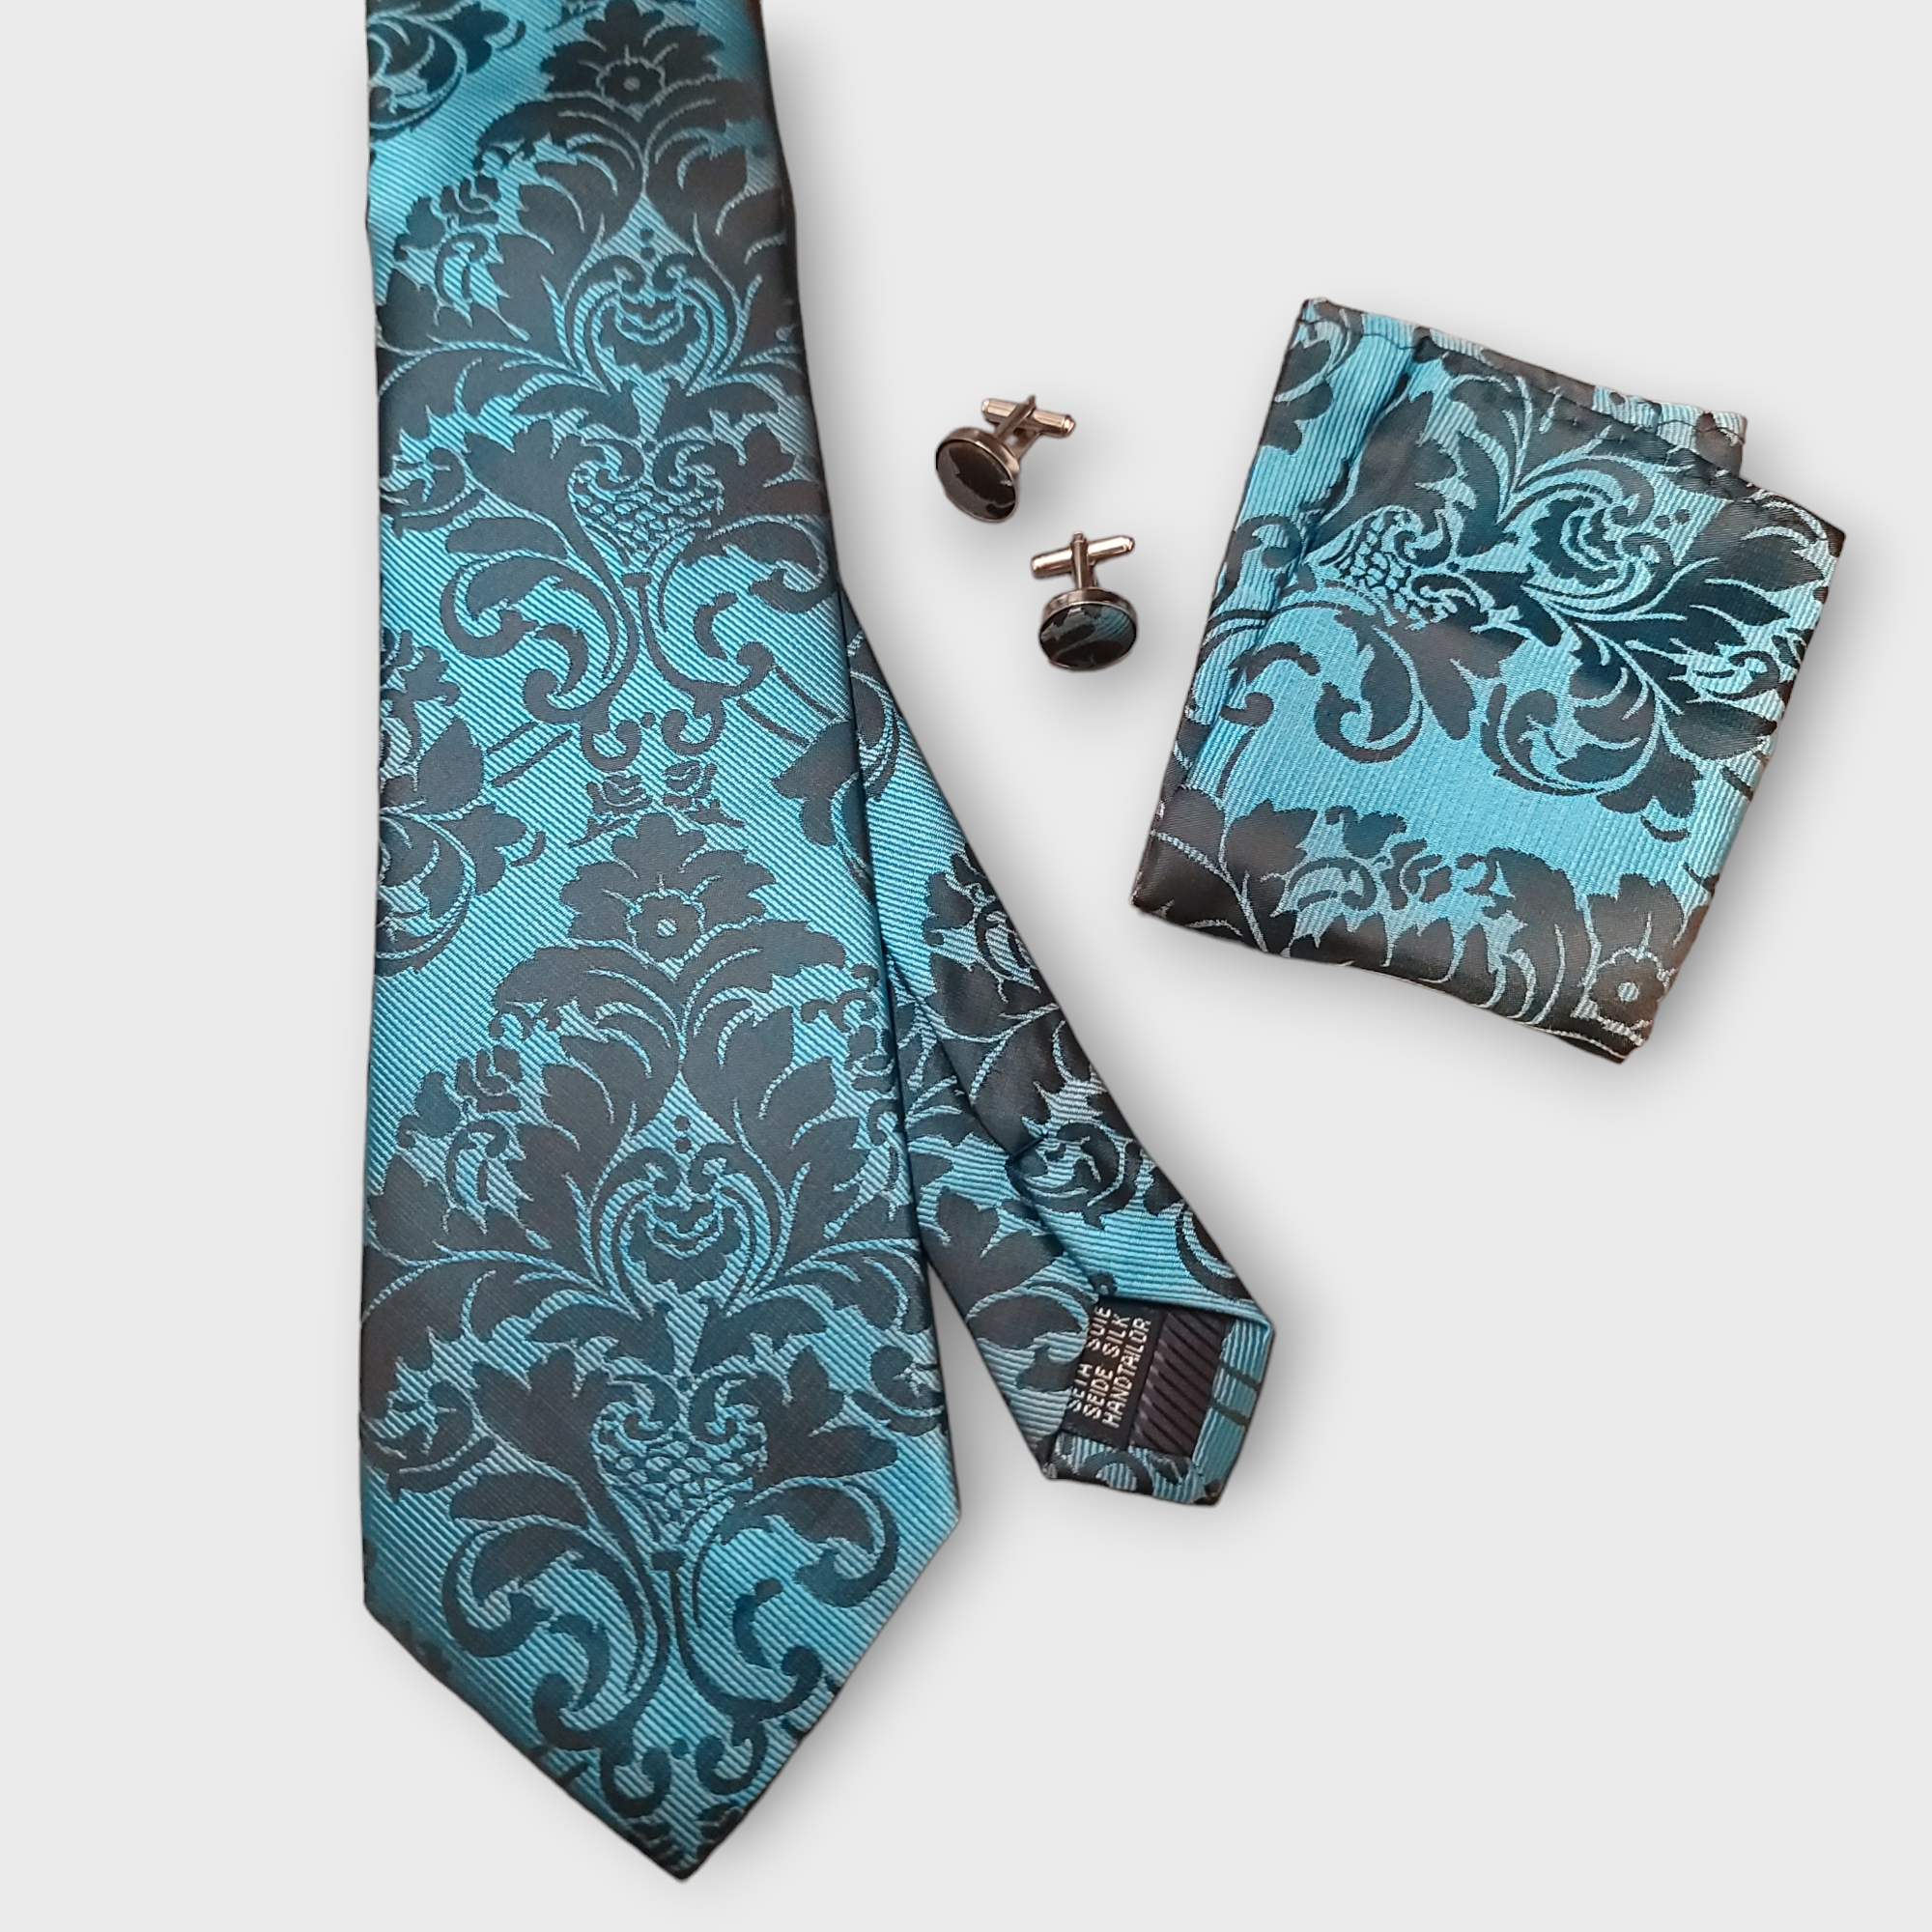 Blue Teal Black Floral Silk Tie Pocket Square Cufflink Set